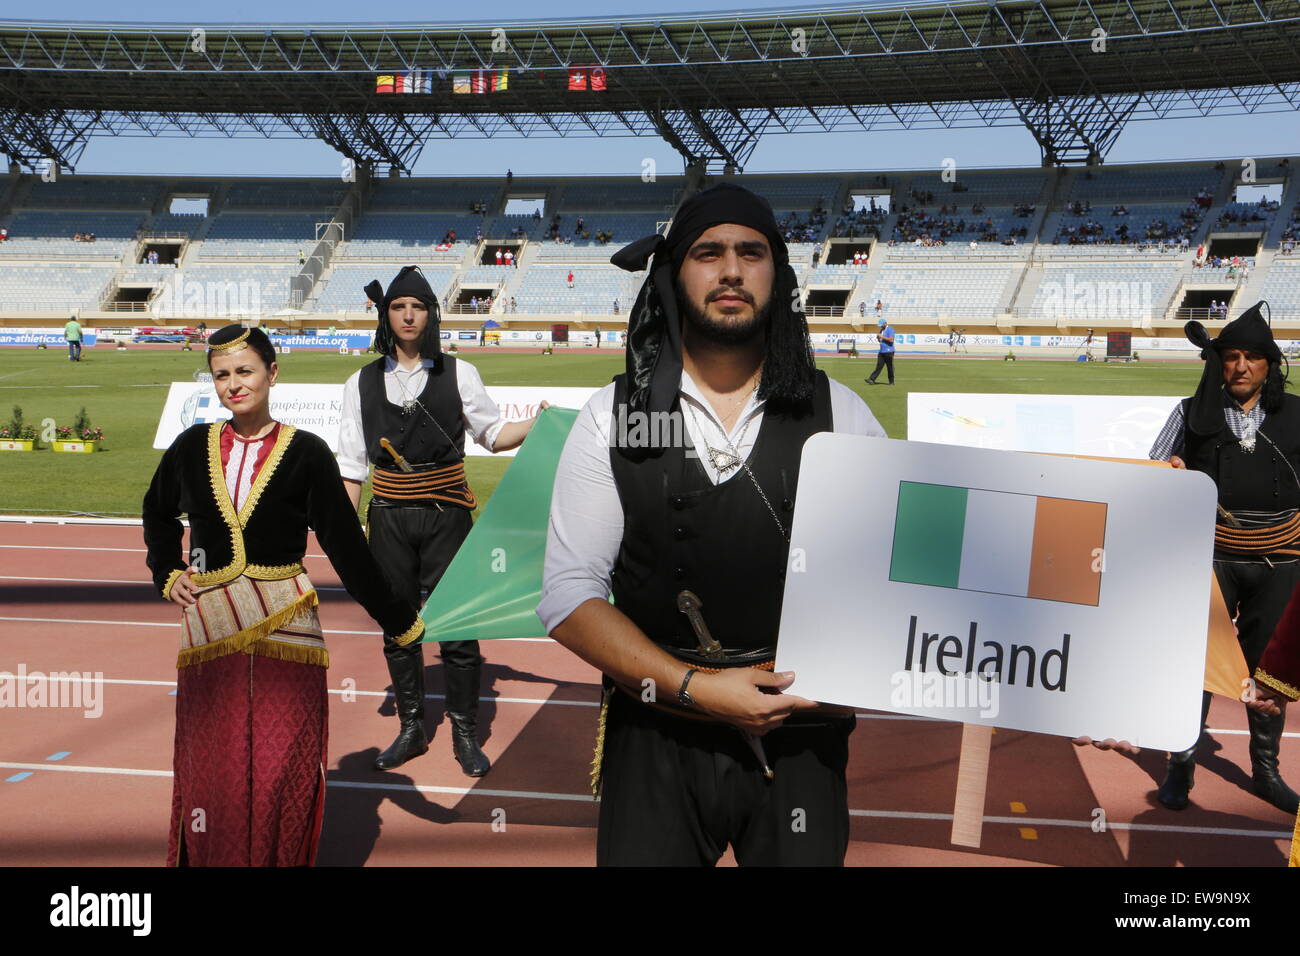 Heraklion, Griechenland. 20. Juni 2015. Die Flagge von Irland wird von  Menschen tragen traditionelle griechische Kostüme während der  Eröffnungsfeier ins Stadion getragen. Die 2015 Team Europameisterschaften  1. Liga vor Tausenden von Menschen